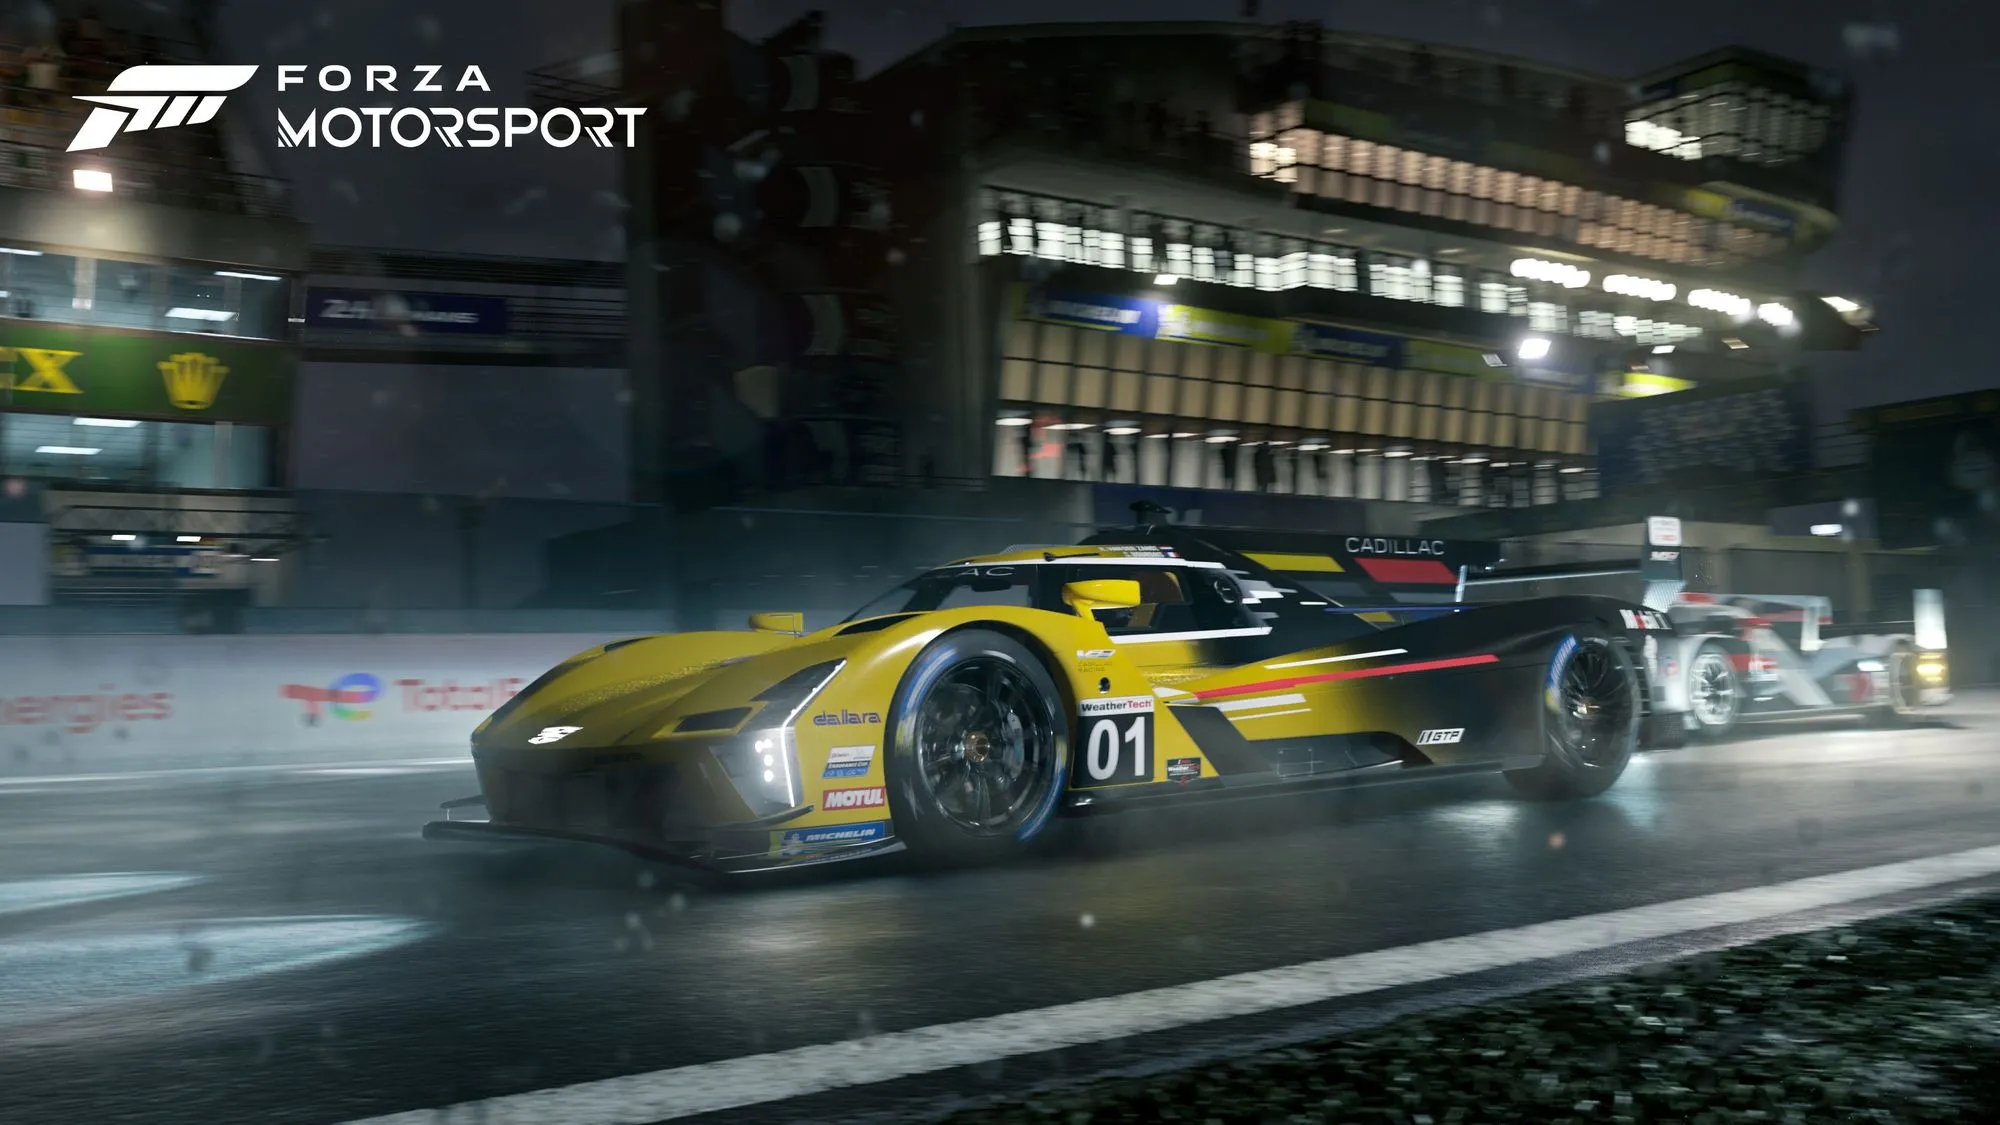 massive_Forza_Motorsport_Xbox_Games_Showcase2023_Press_Kit_02_16x9_WM_a48e59ed45.webp